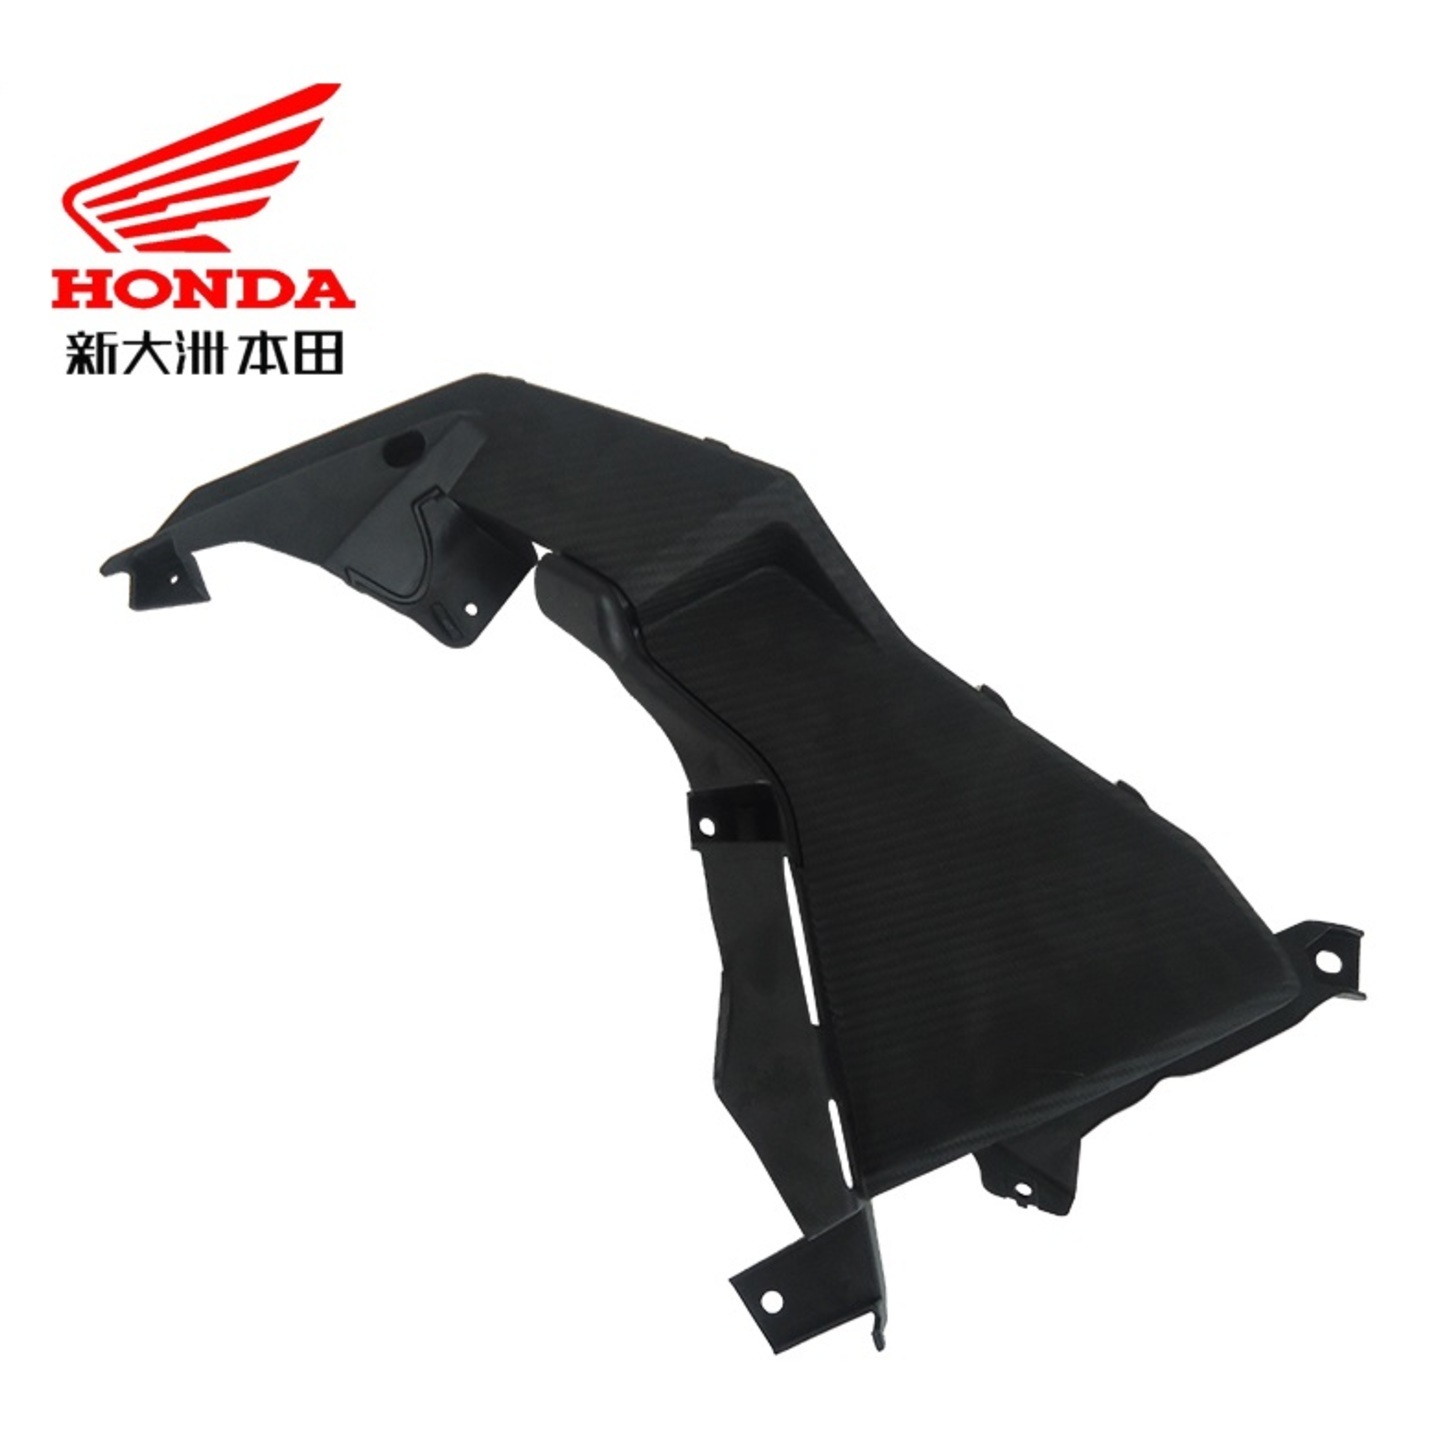 Honda CBF190X lower inner fuel tank side cover left right cover covers fairings fairing coverset